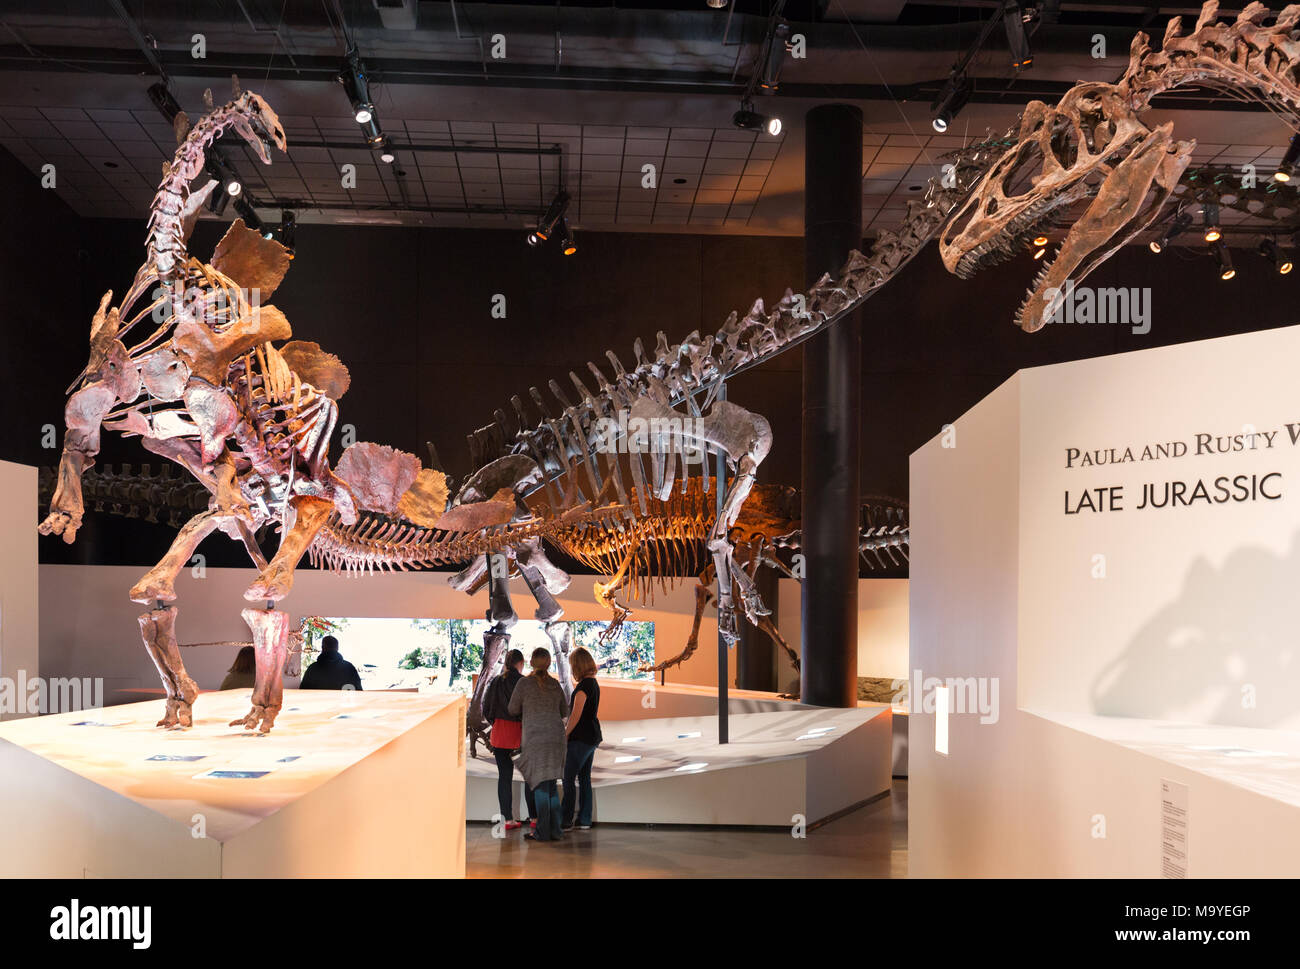 Les personnes à la recherche de dinosaures, des squelettes de dinosaures et fossiles de dinosaures au Musée des Sciences Naturelles de Houston, Houston, Texas, USA Banque D'Images